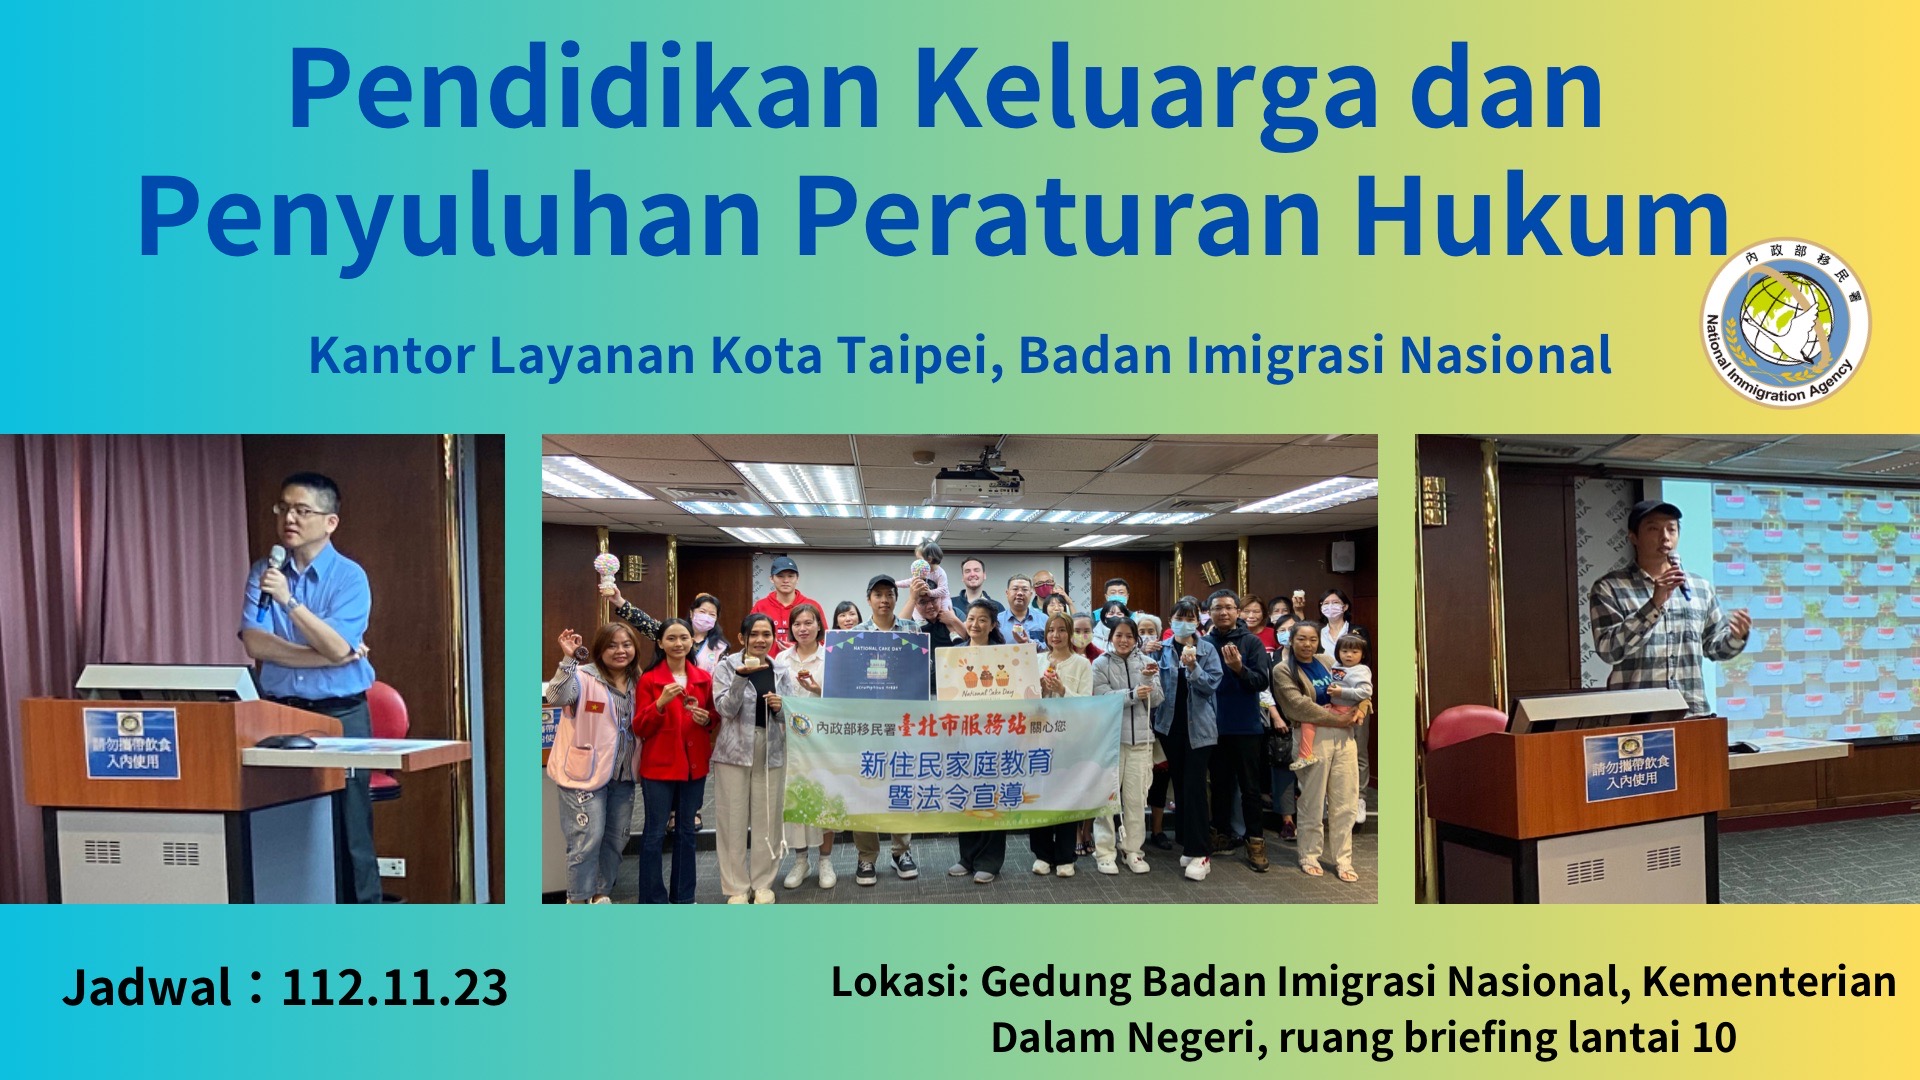 1123新住民家庭教育及法令宣導活動成果-印尼語